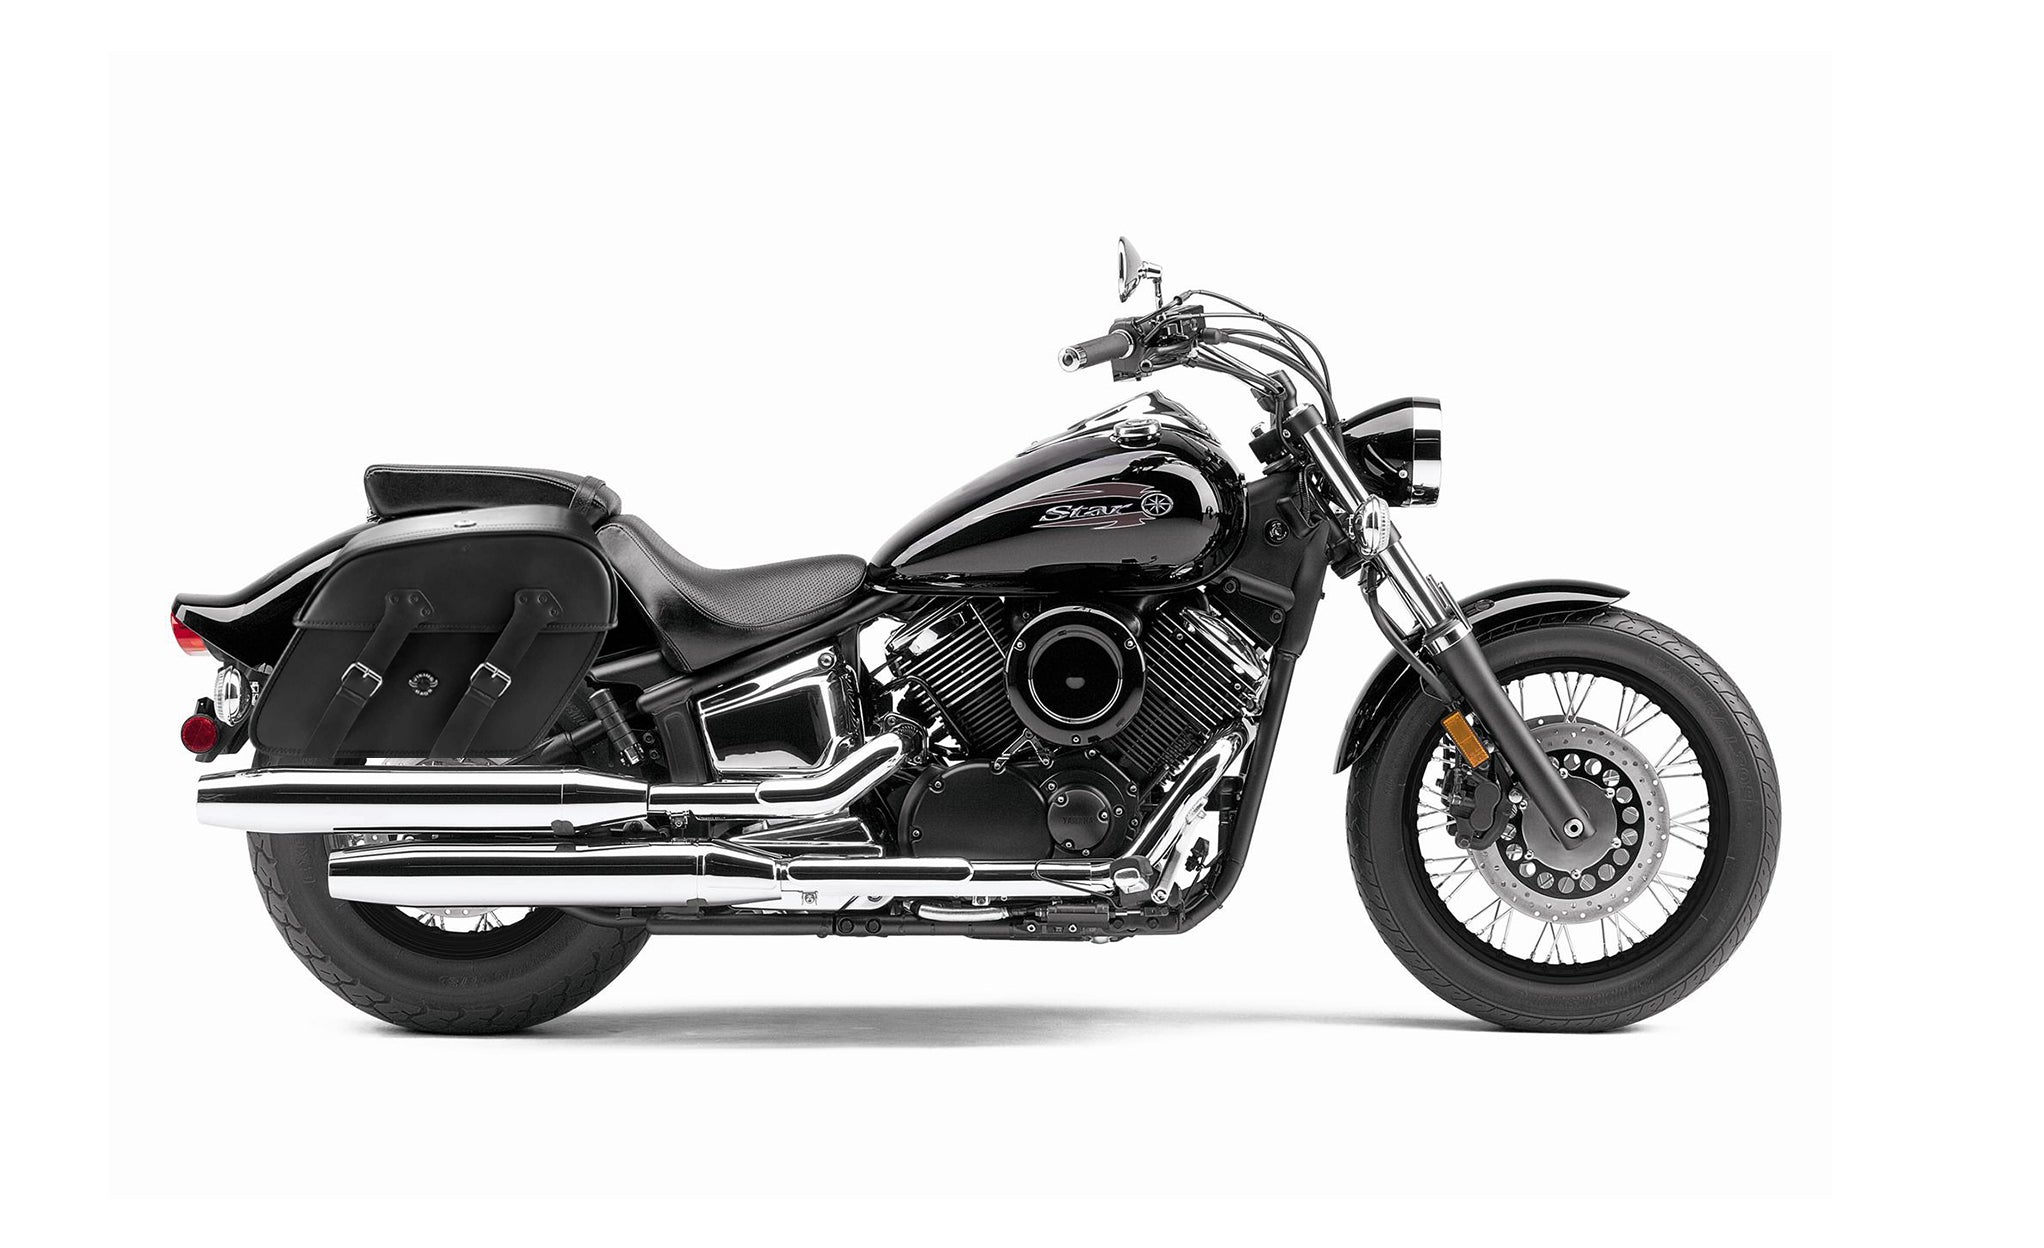 Viking Raven Large Yamaha V Star 1100 Custom Xvs11T Motorcycle Leather Saddlebags on Bike Photo @expand